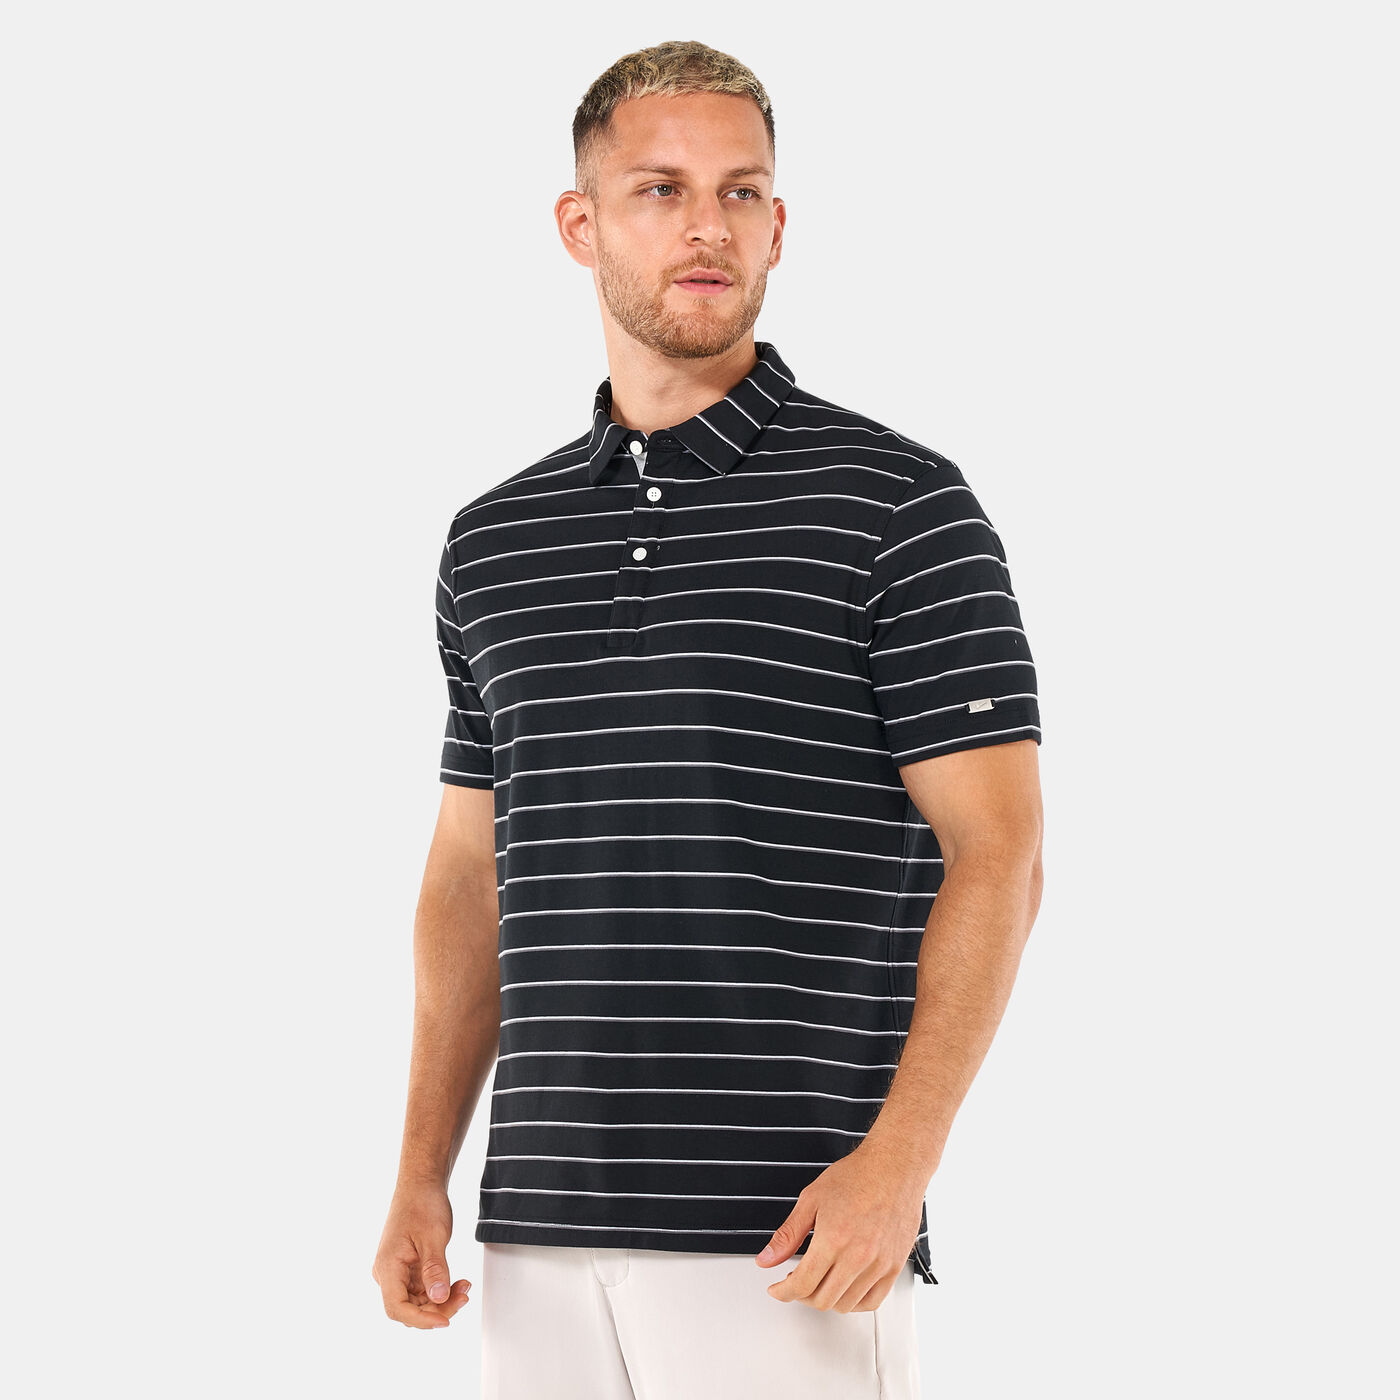 Men's Dri-FIT Player Striped Golf Polo Shirt